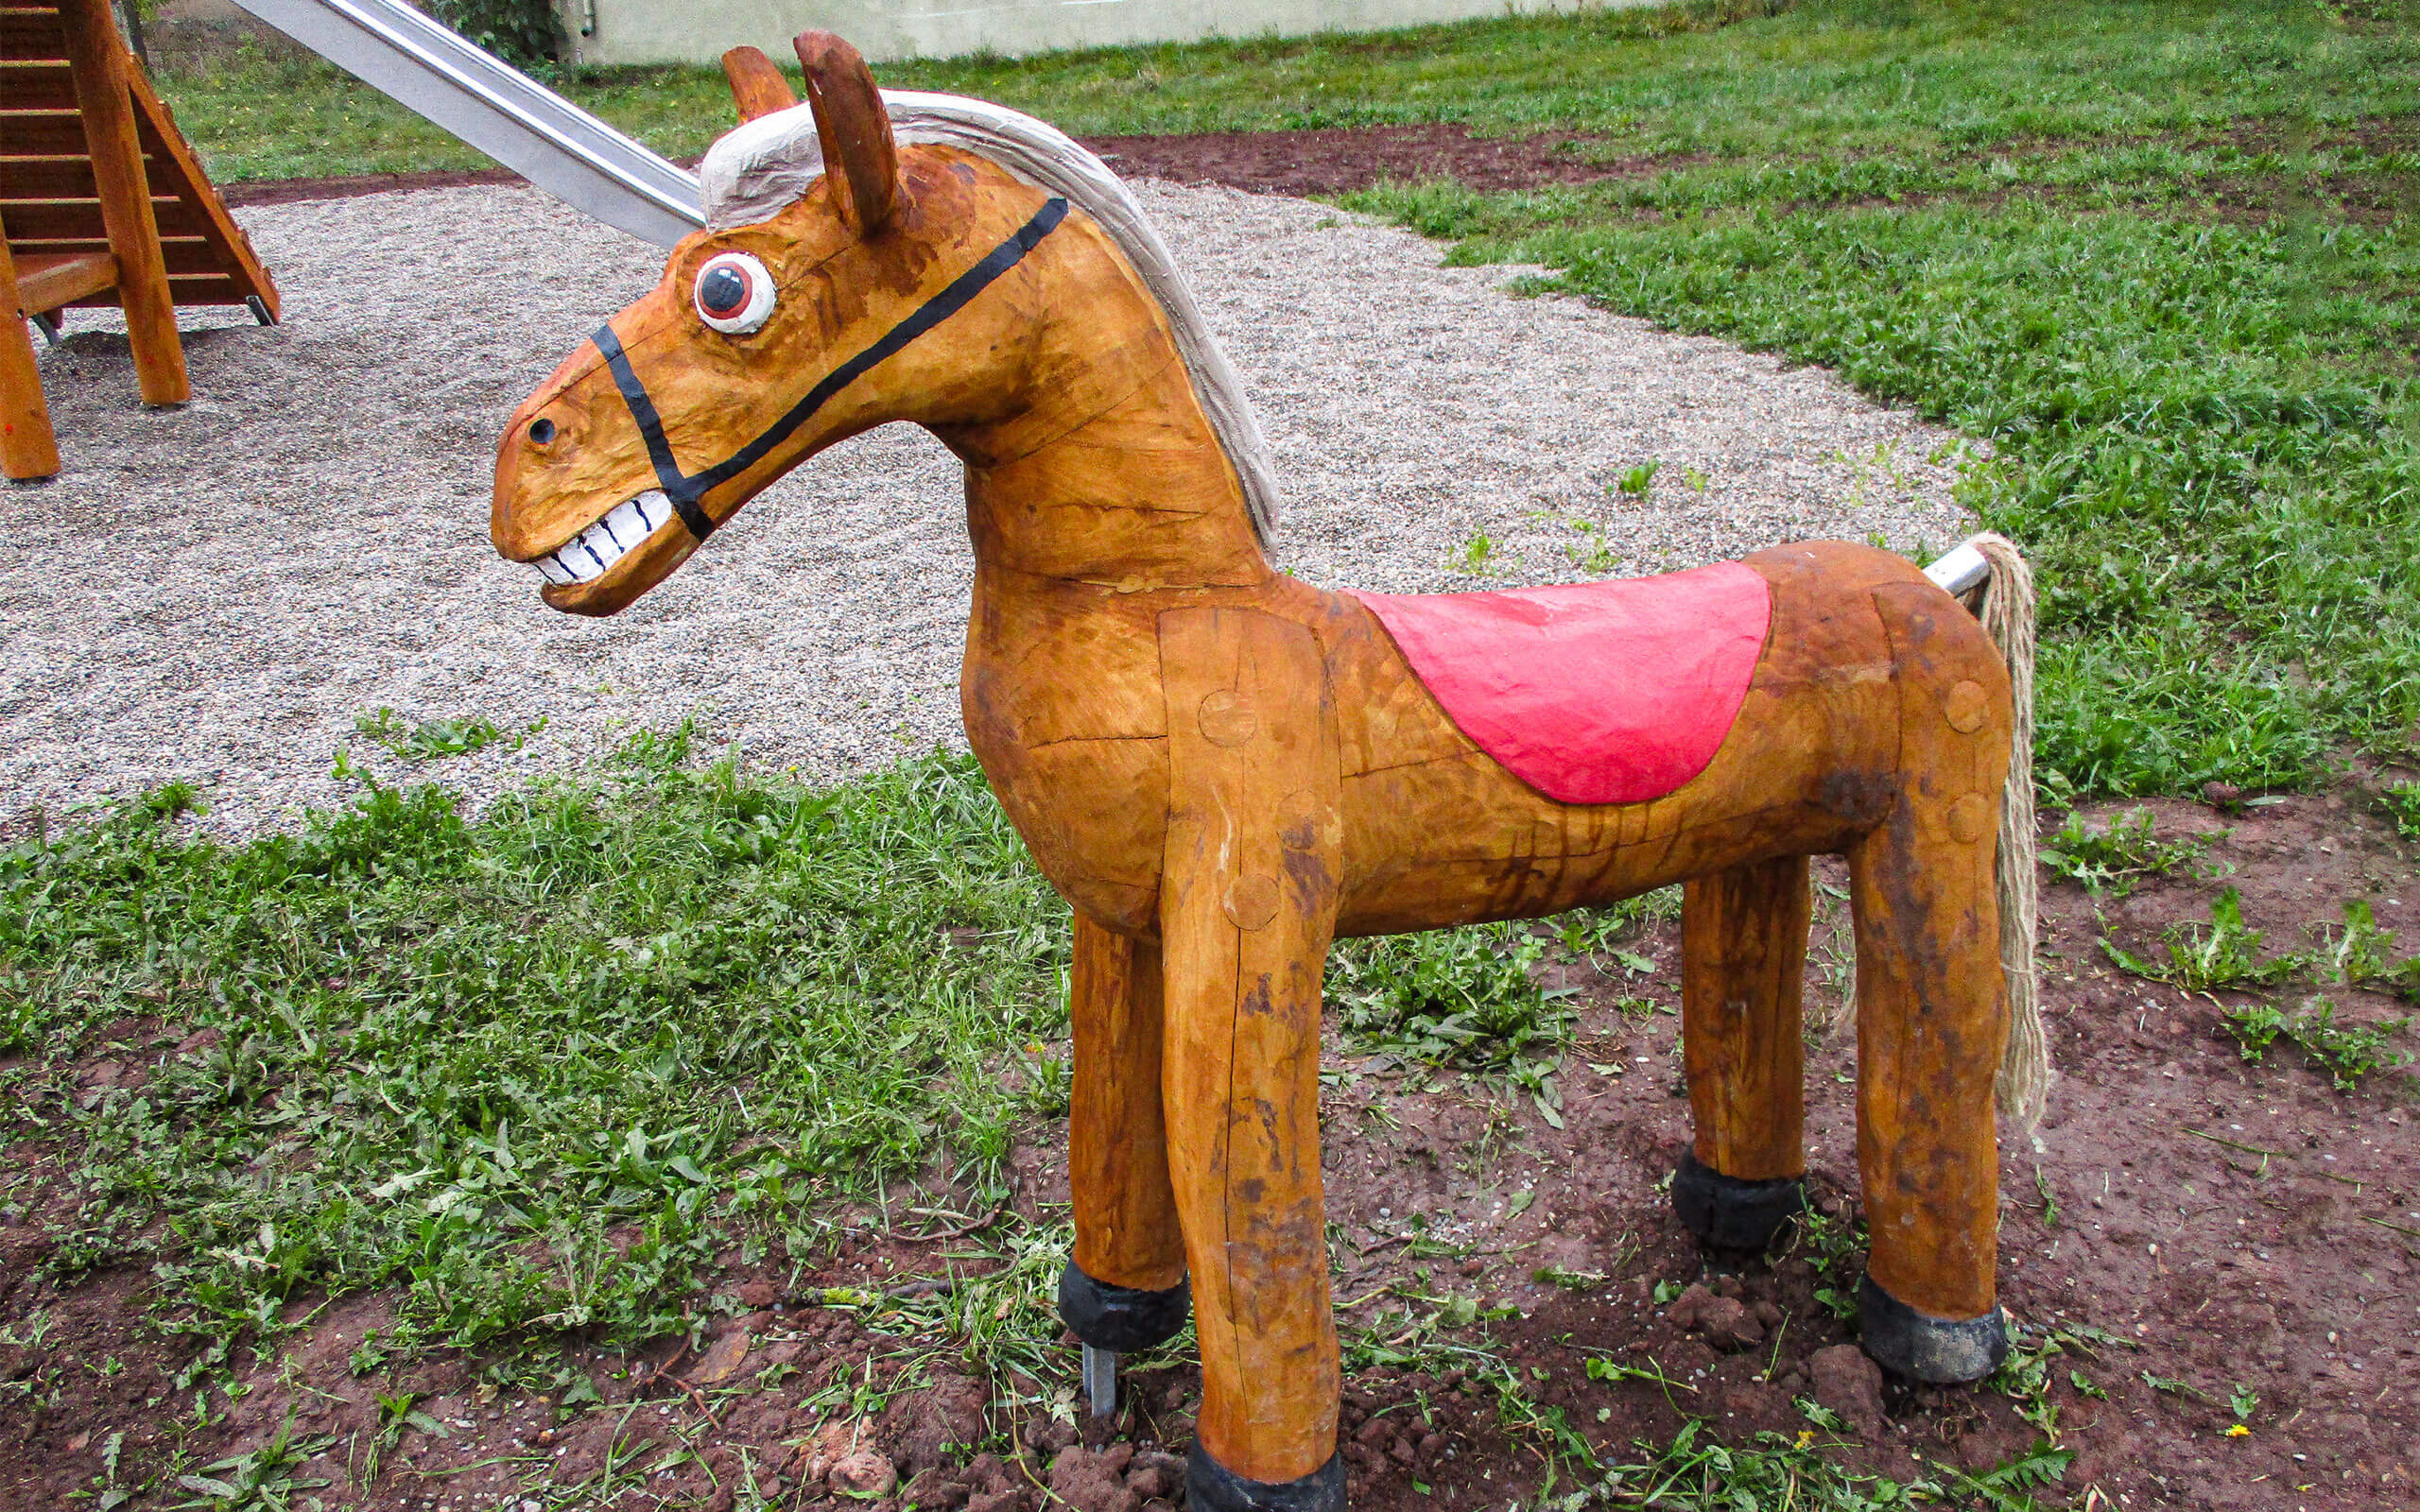 Skulptur Pferd